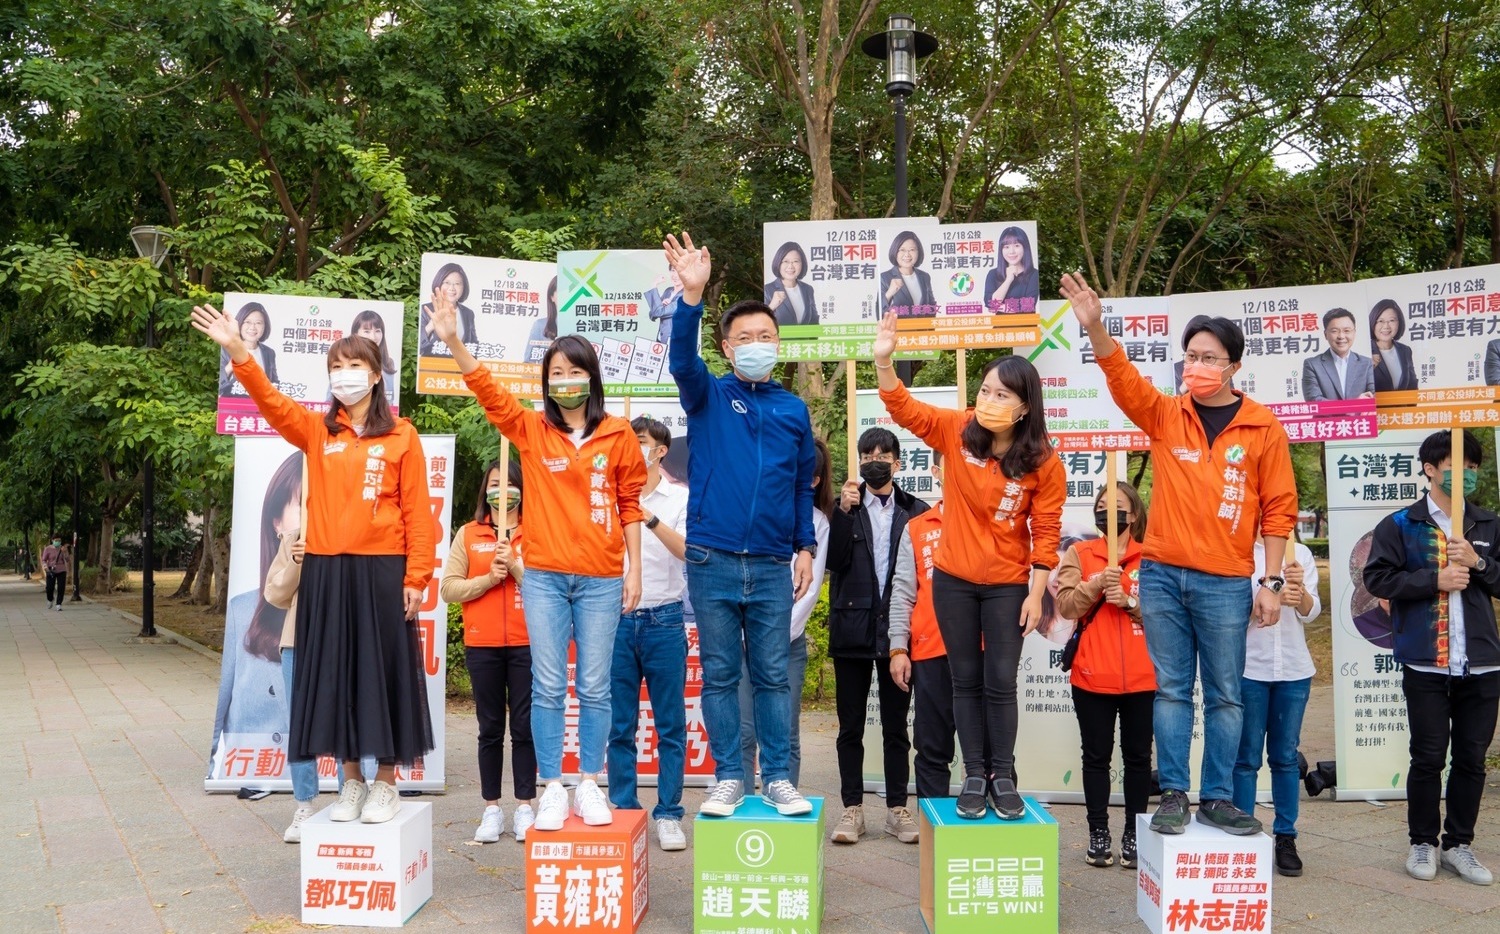 「高雄正能量」續催四個不同意 趙天麟:盼高雄人再當台灣英雄 | 政治 |